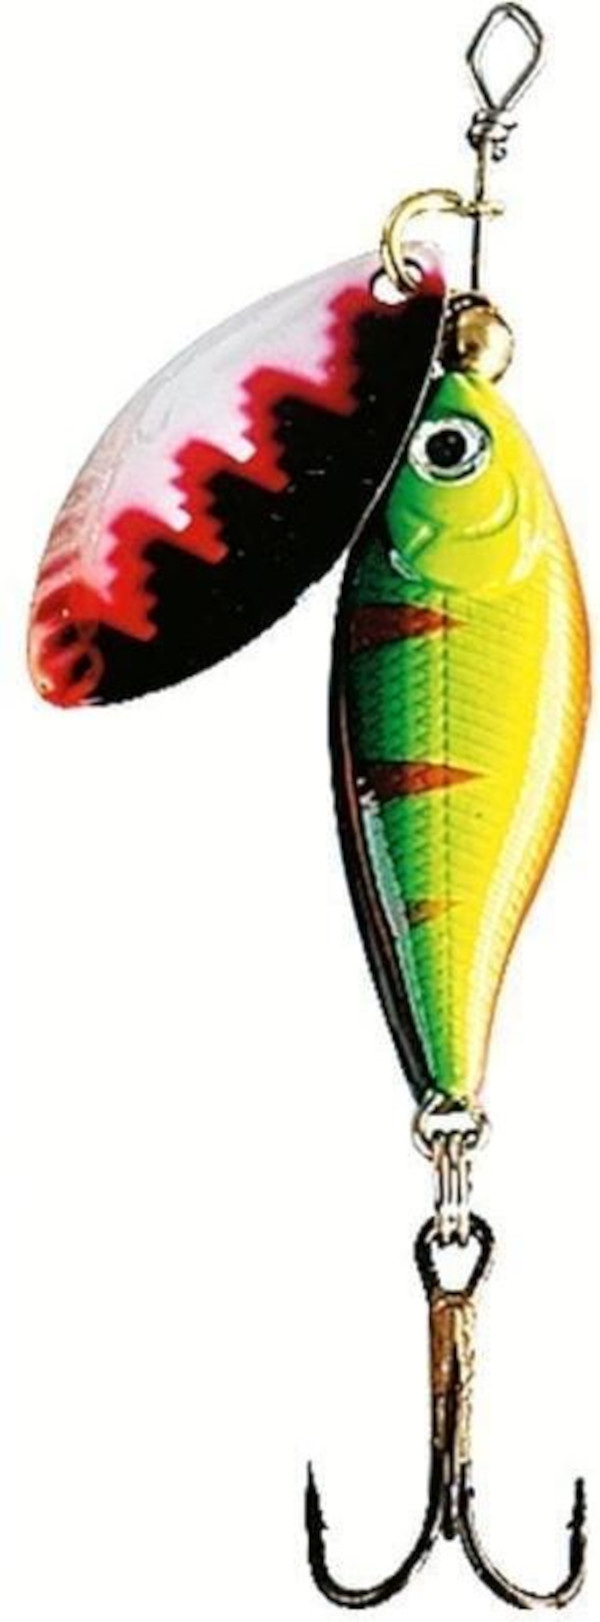 Fladen Loket spinner - Green body. White/Red/Black spoon